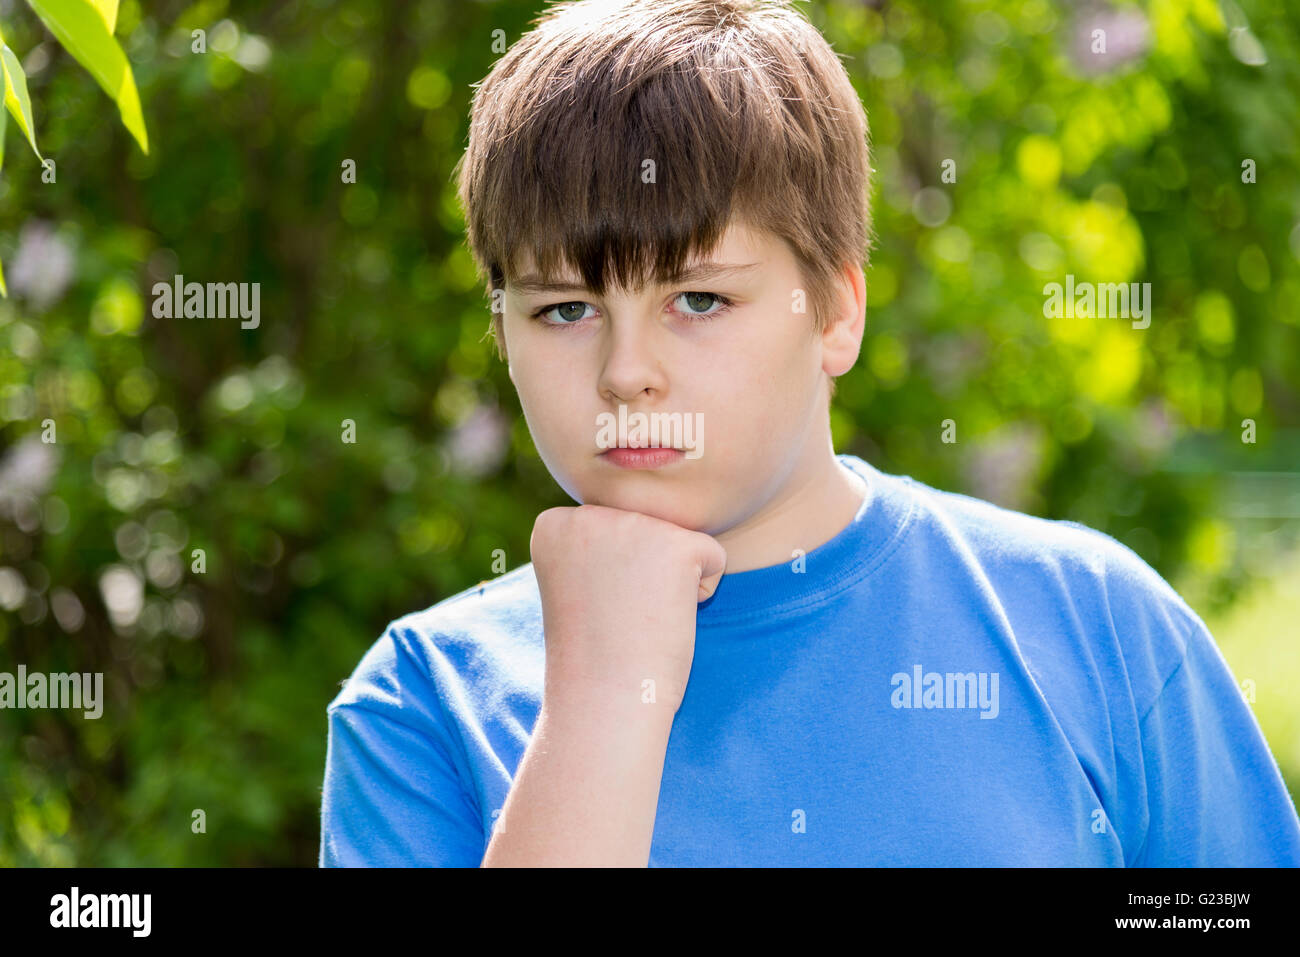 Porträt eines jungen von etwa 12 Jahren im Park Stockfoto